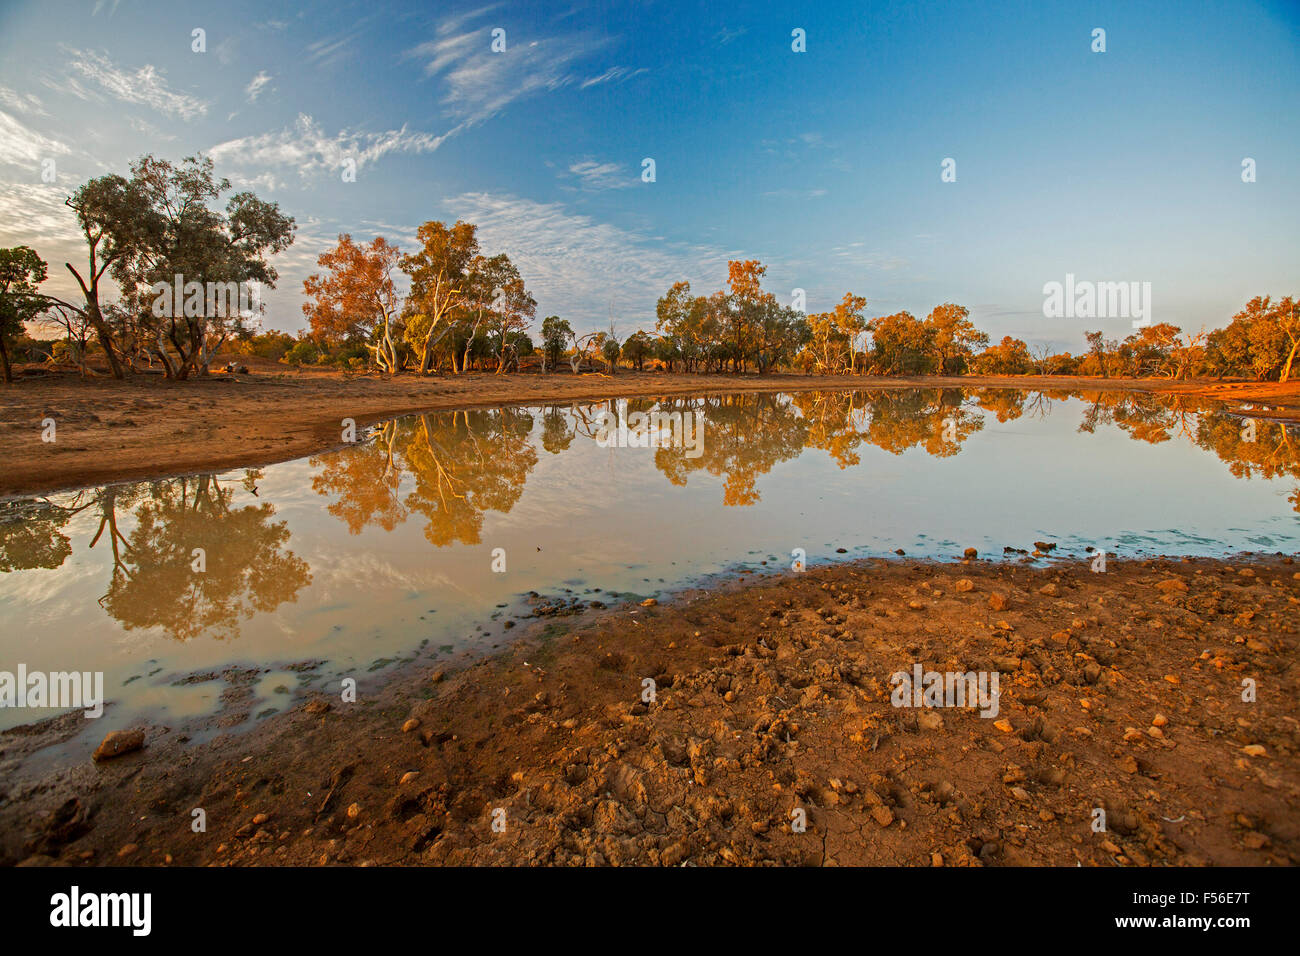 Outback australiano paesaggio durante la siccità con alberi e cielo blu riflessa in superficie a specchio di acqua a oasi al tramonto Foto Stock